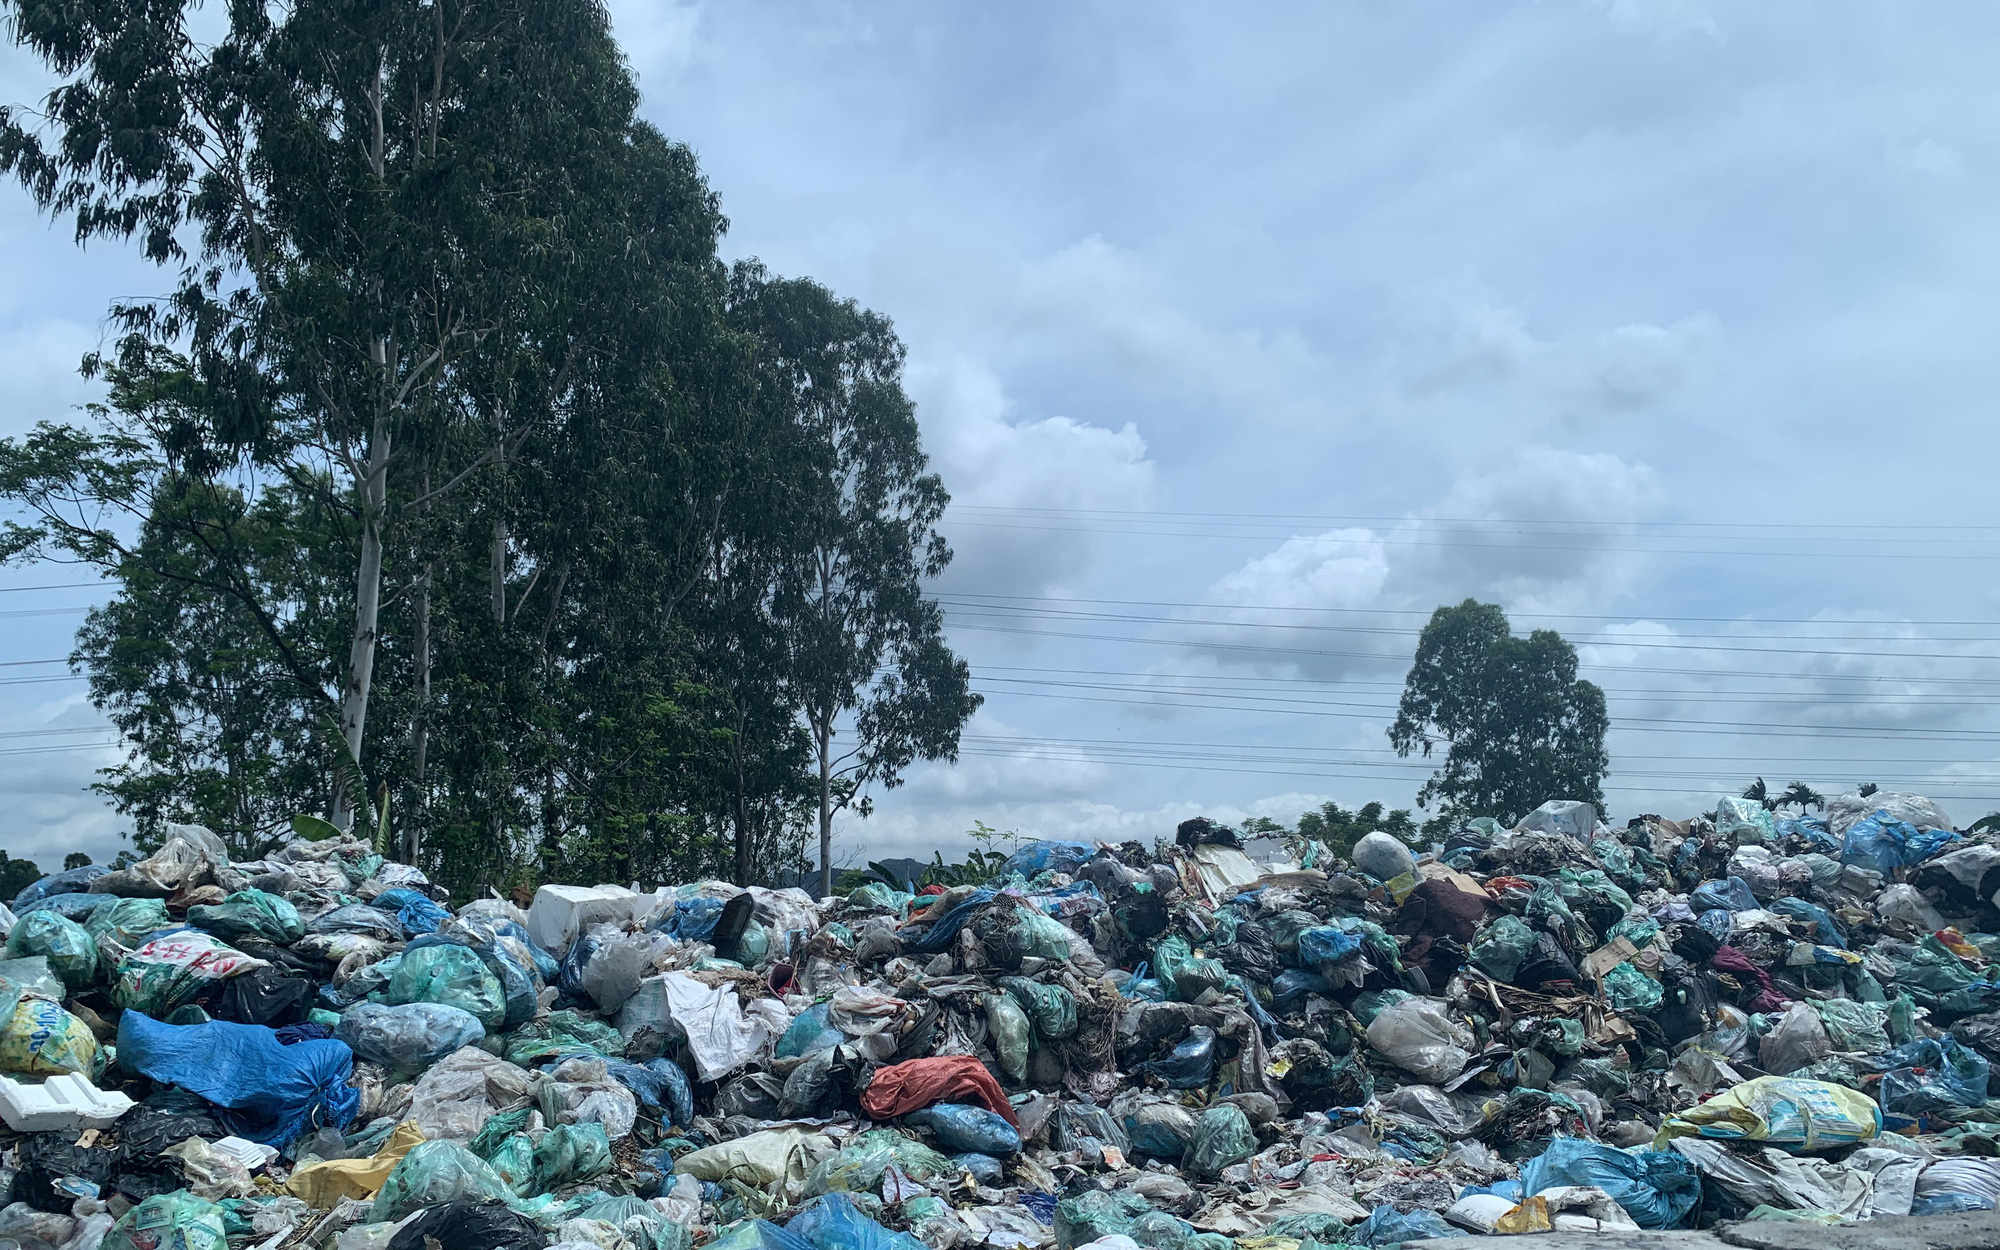 Xử lý rác thải nông thôn ở Hải Phòng: Loay hoay tìm giải pháp hợp tình - hợp lý